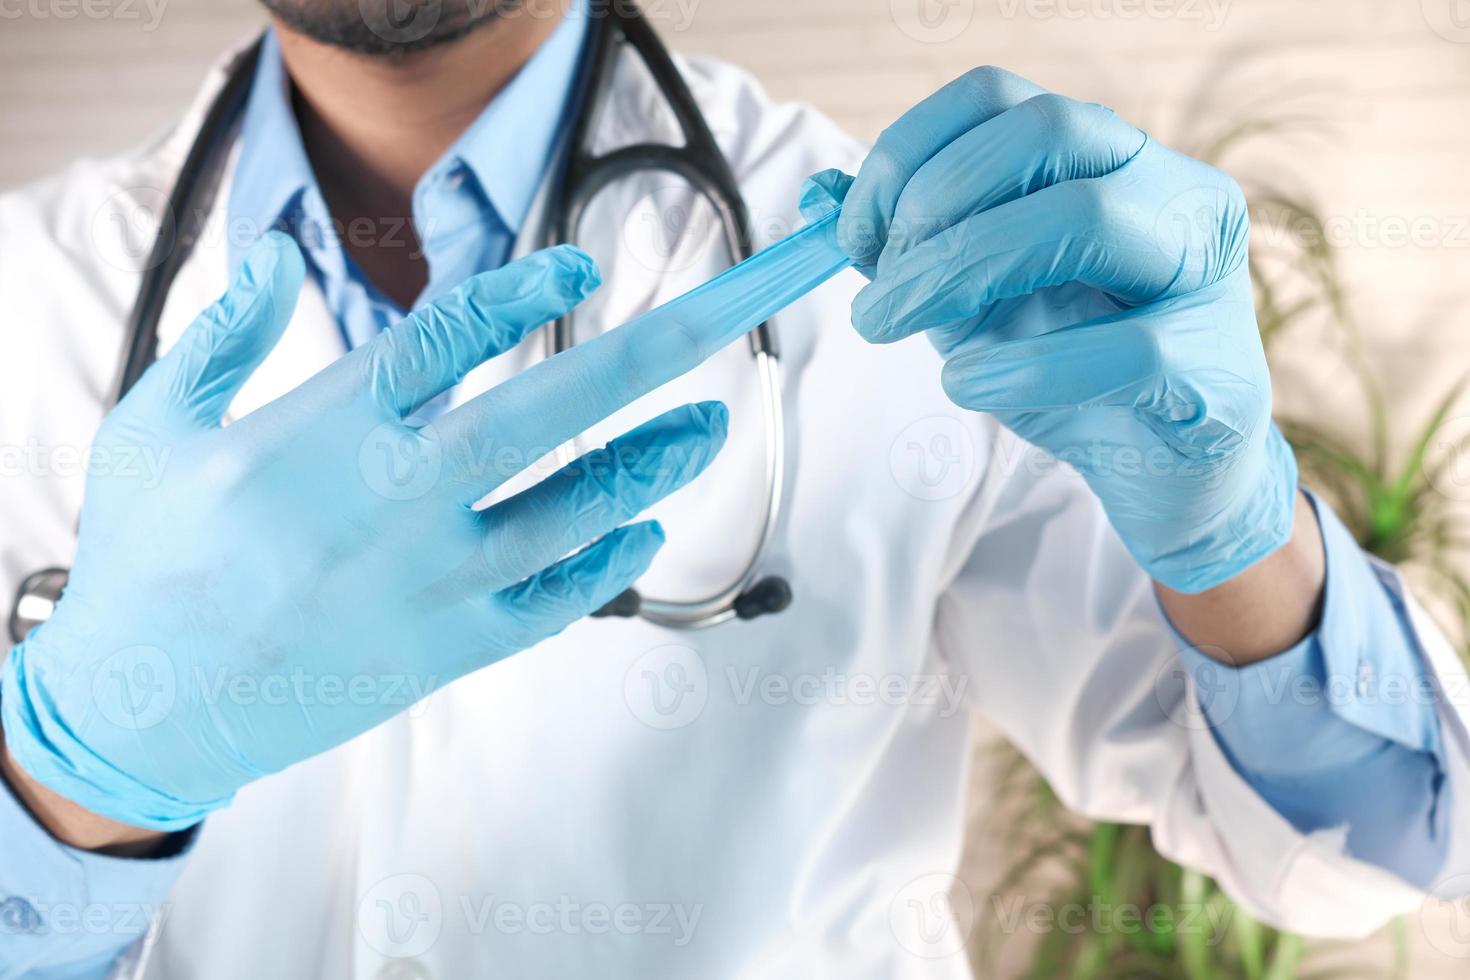 homem removendo luvas médicas, close-up foto